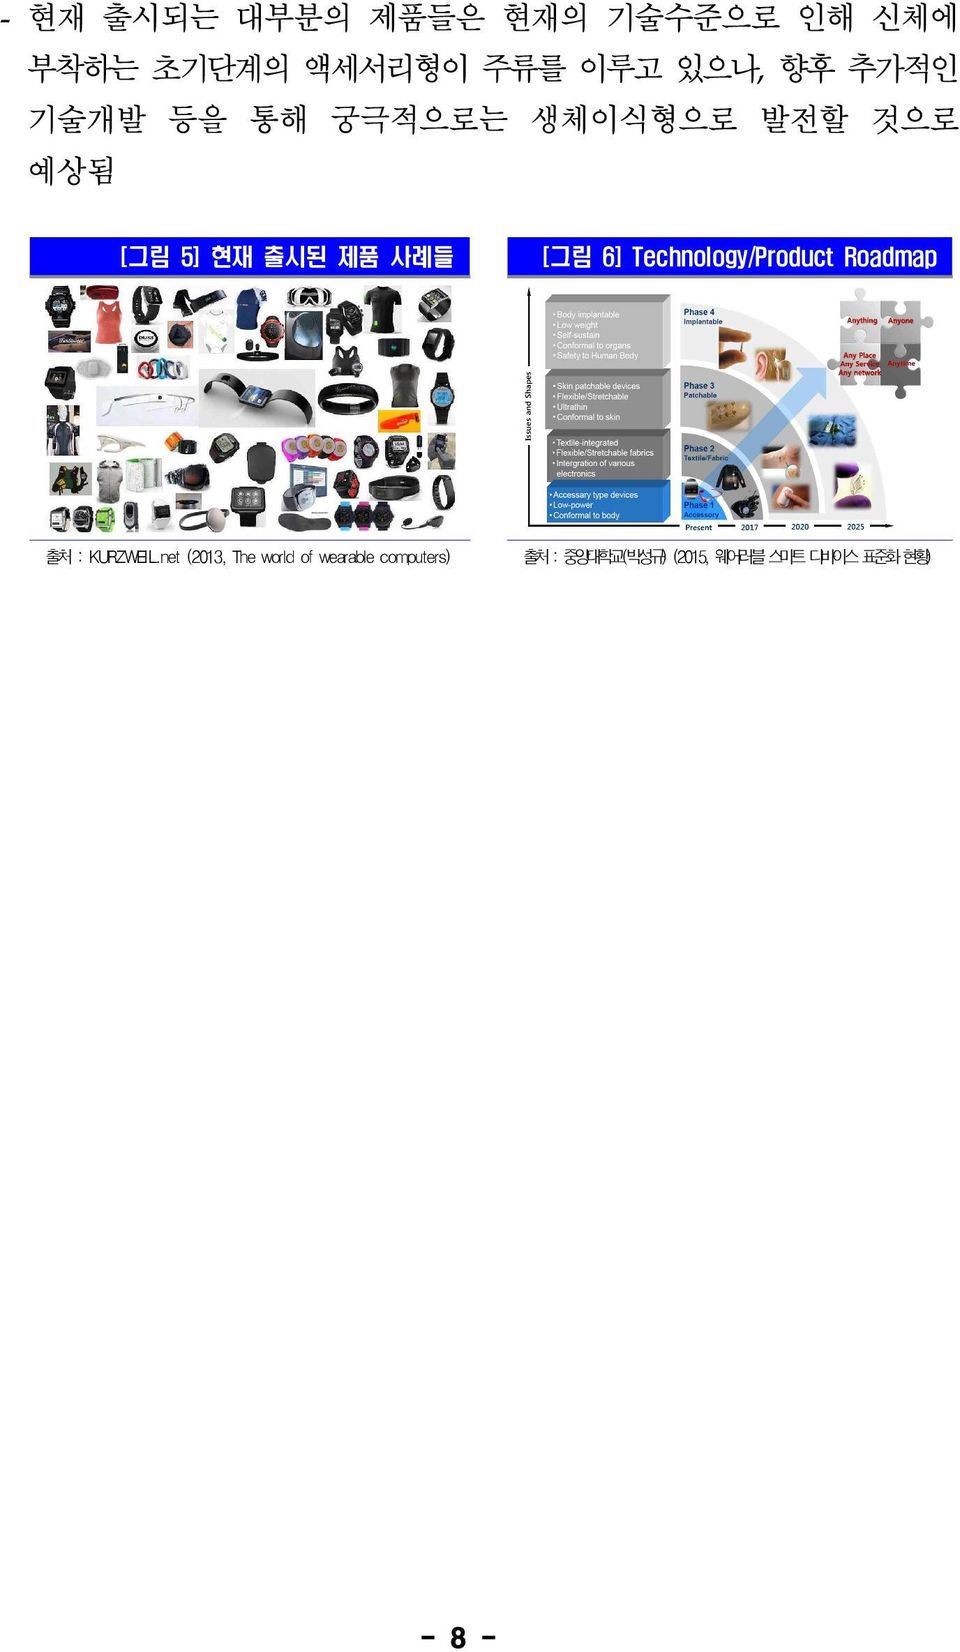 [그림 6] Technology/Product Roadmap 출처 : KURZWEIL.